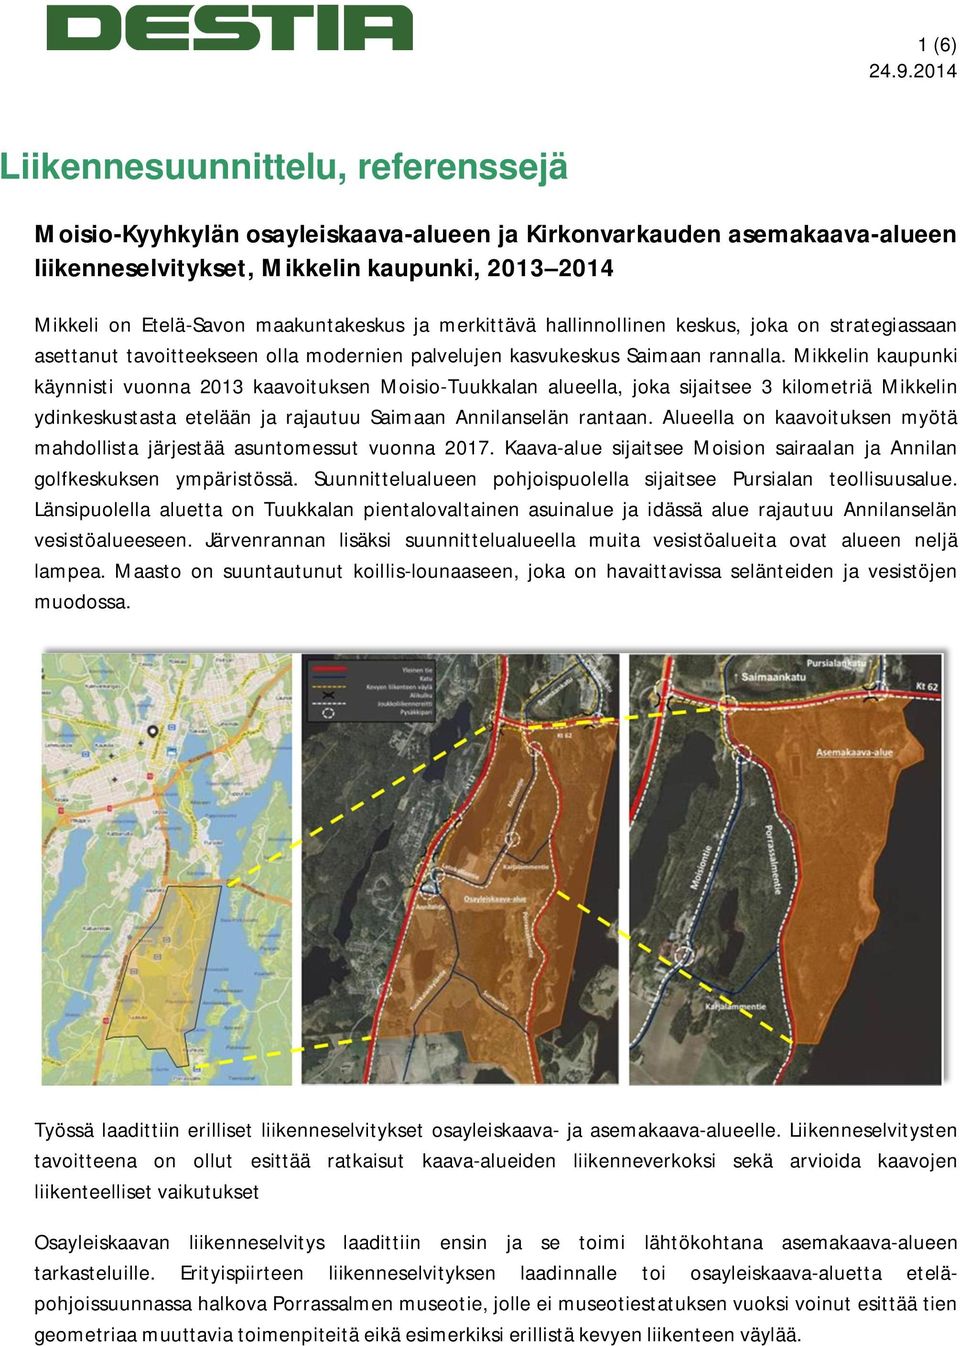 Mikkelin kaupunki käynnisti vuonna 2013 kaavoituksen Moisio-Tuukkalan alueella, joka sijaitsee 3 kilometriä Mikkelin ydinkeskustasta etelään ja rajautuu Saimaan Annilanselän rantaan.